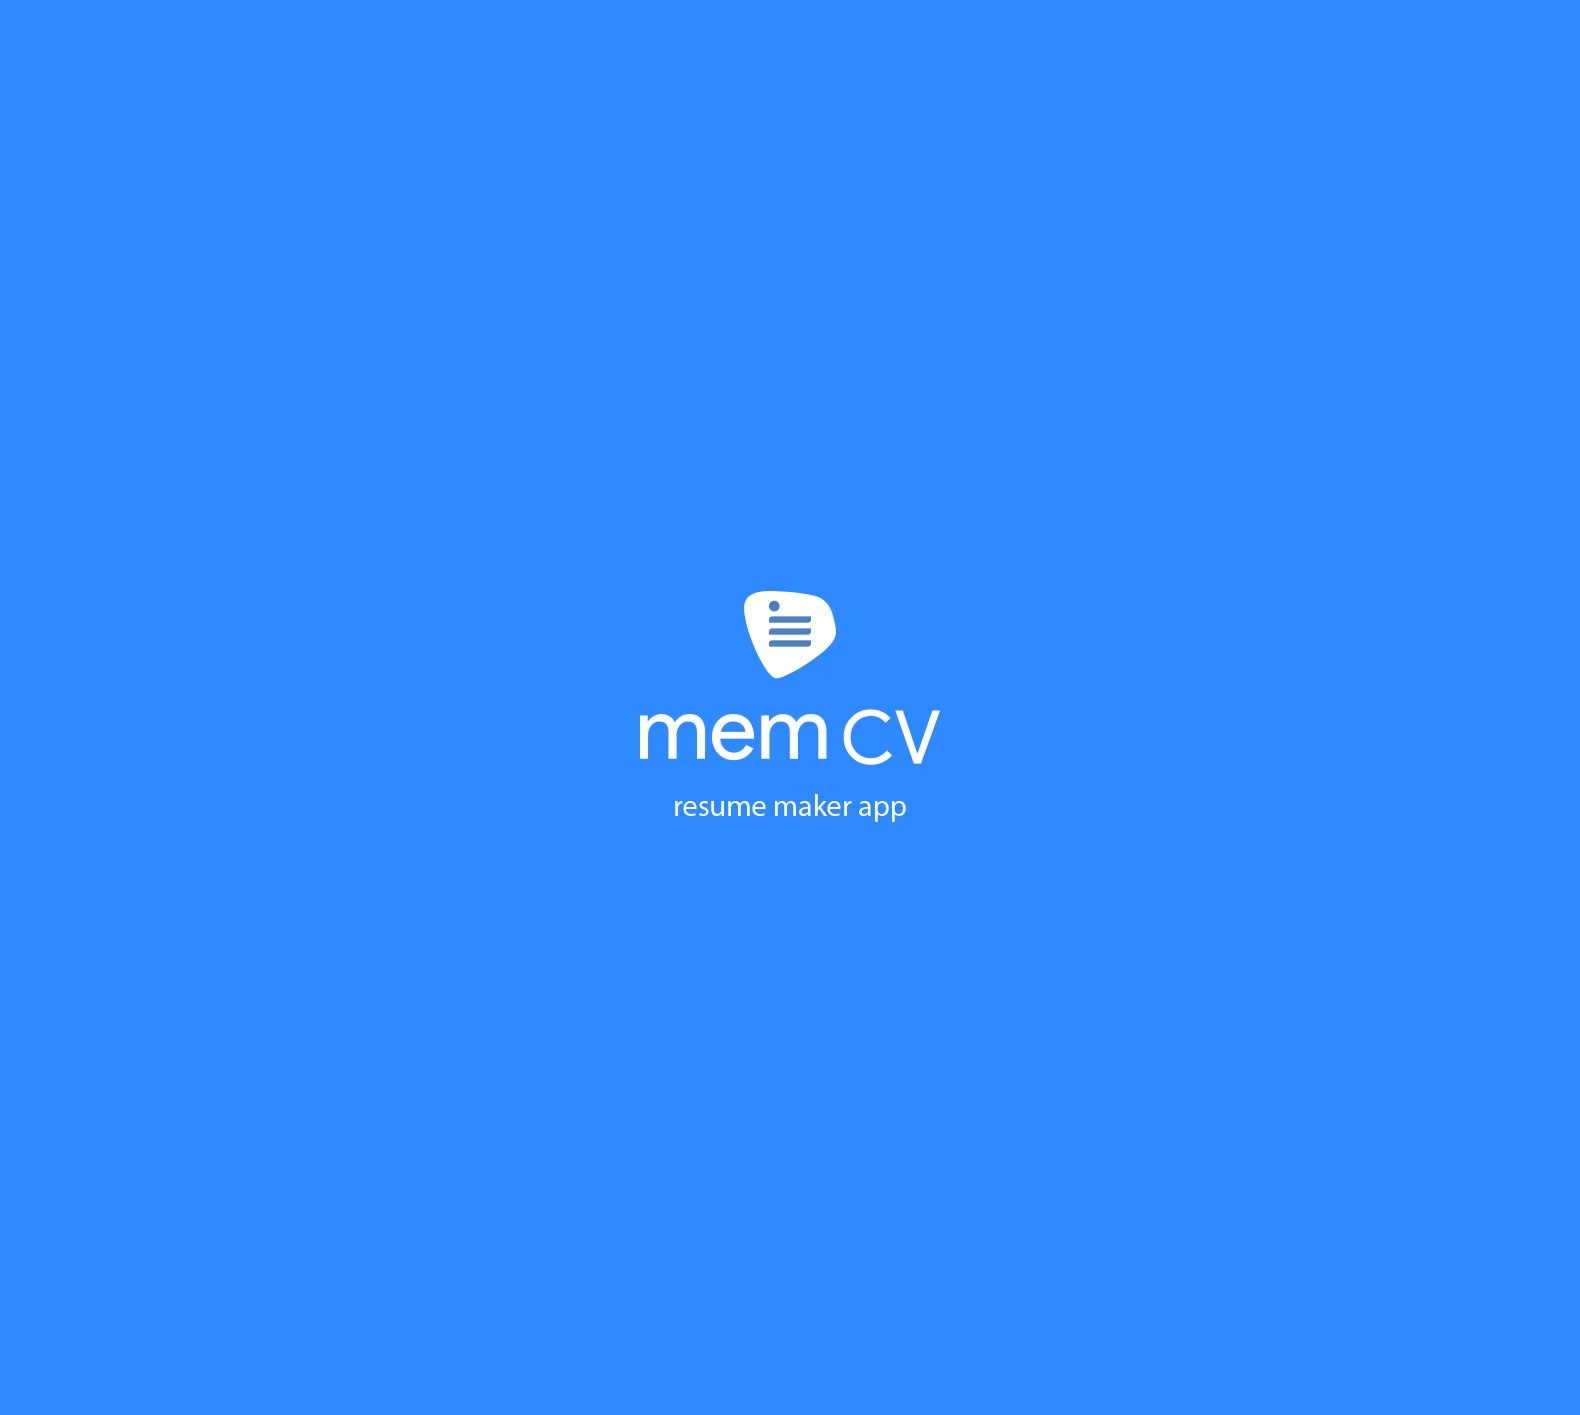 Logo MemCV Project 4